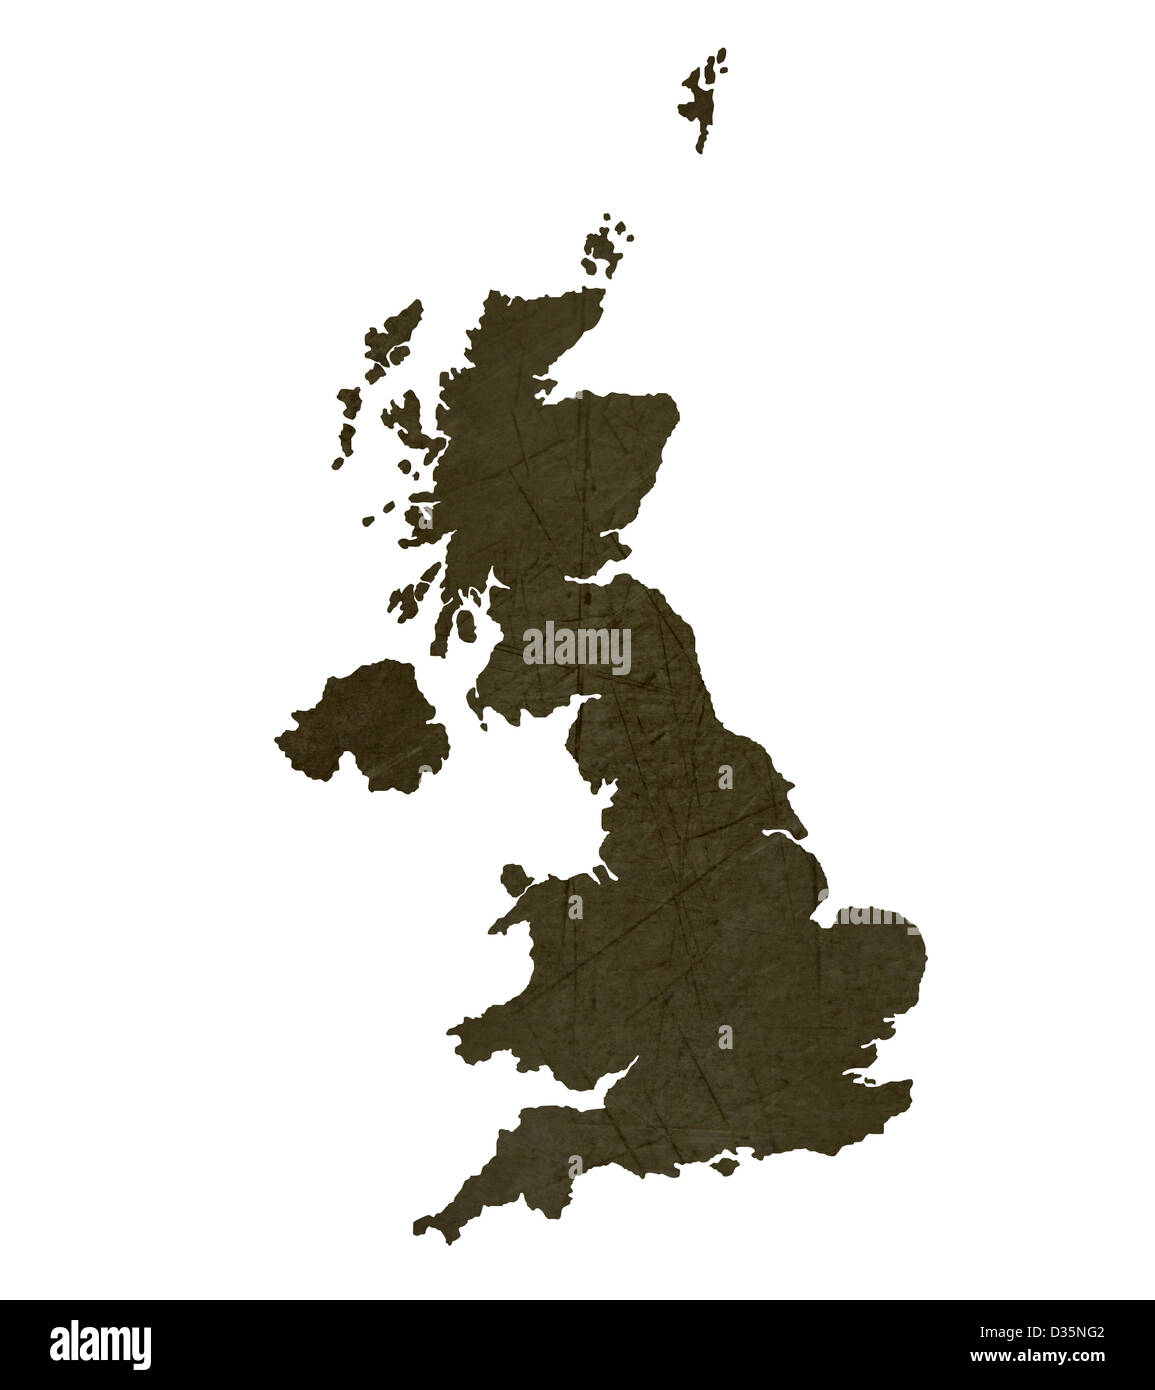 Dark stagliano e testurizzato mappa del Regno Unito isolati su sfondo bianco. Foto Stock